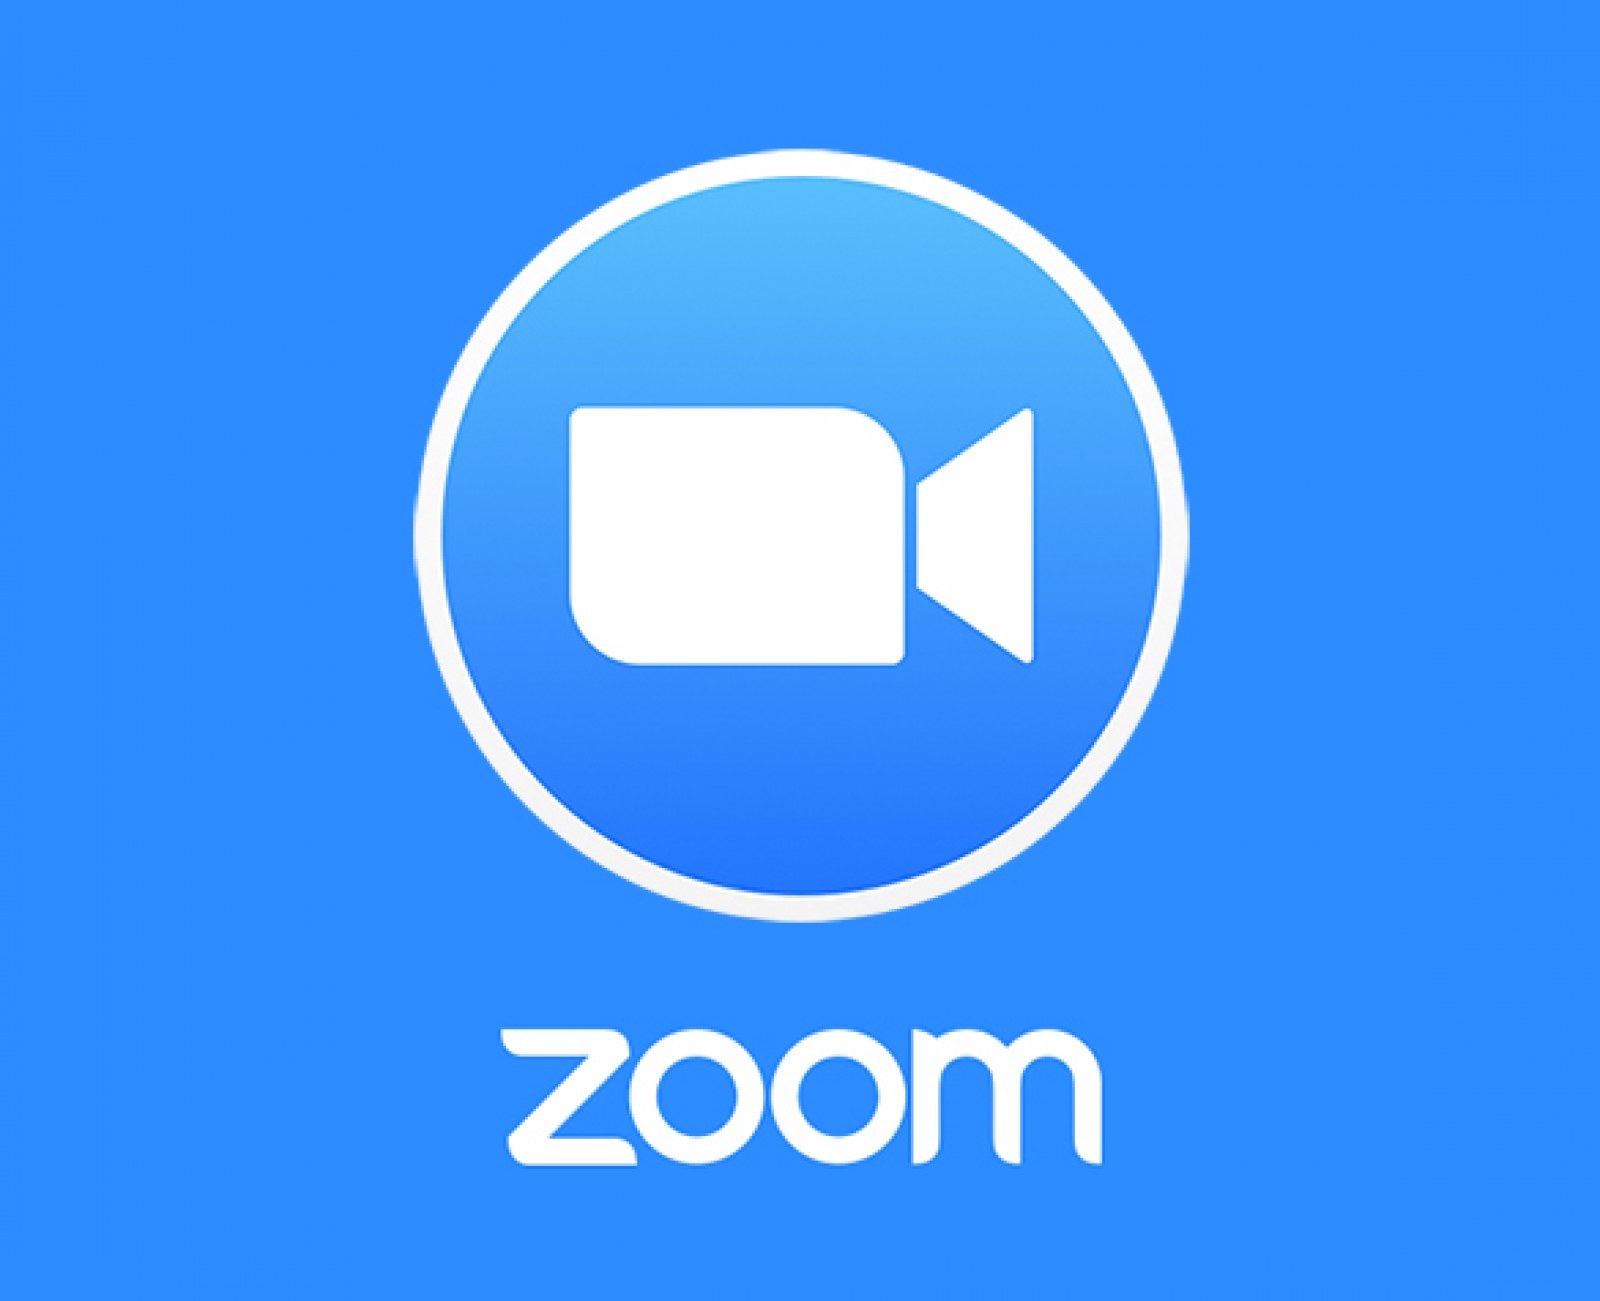 Le videochiamate Zoom non sono crittografate end-to-end